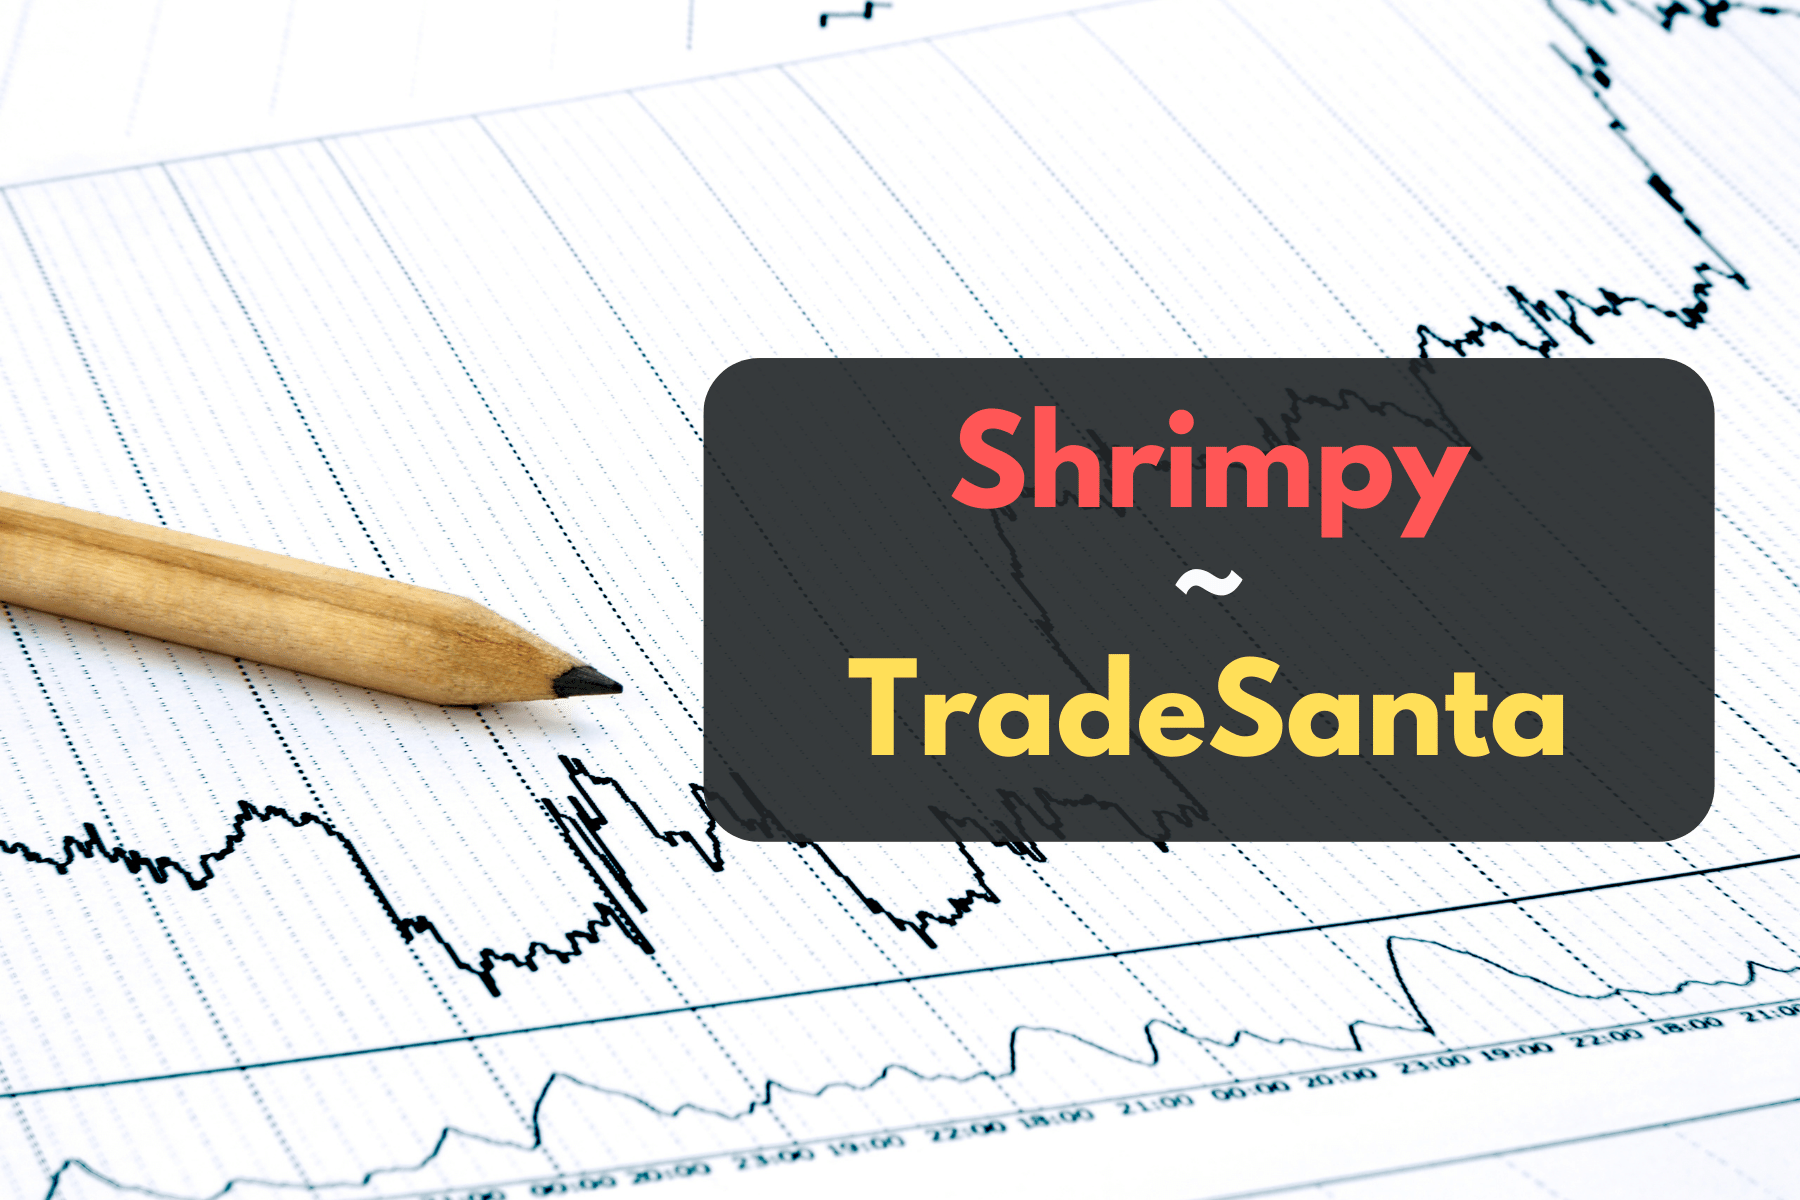 Shrimpy or TradeSanta - How Do They Compare?